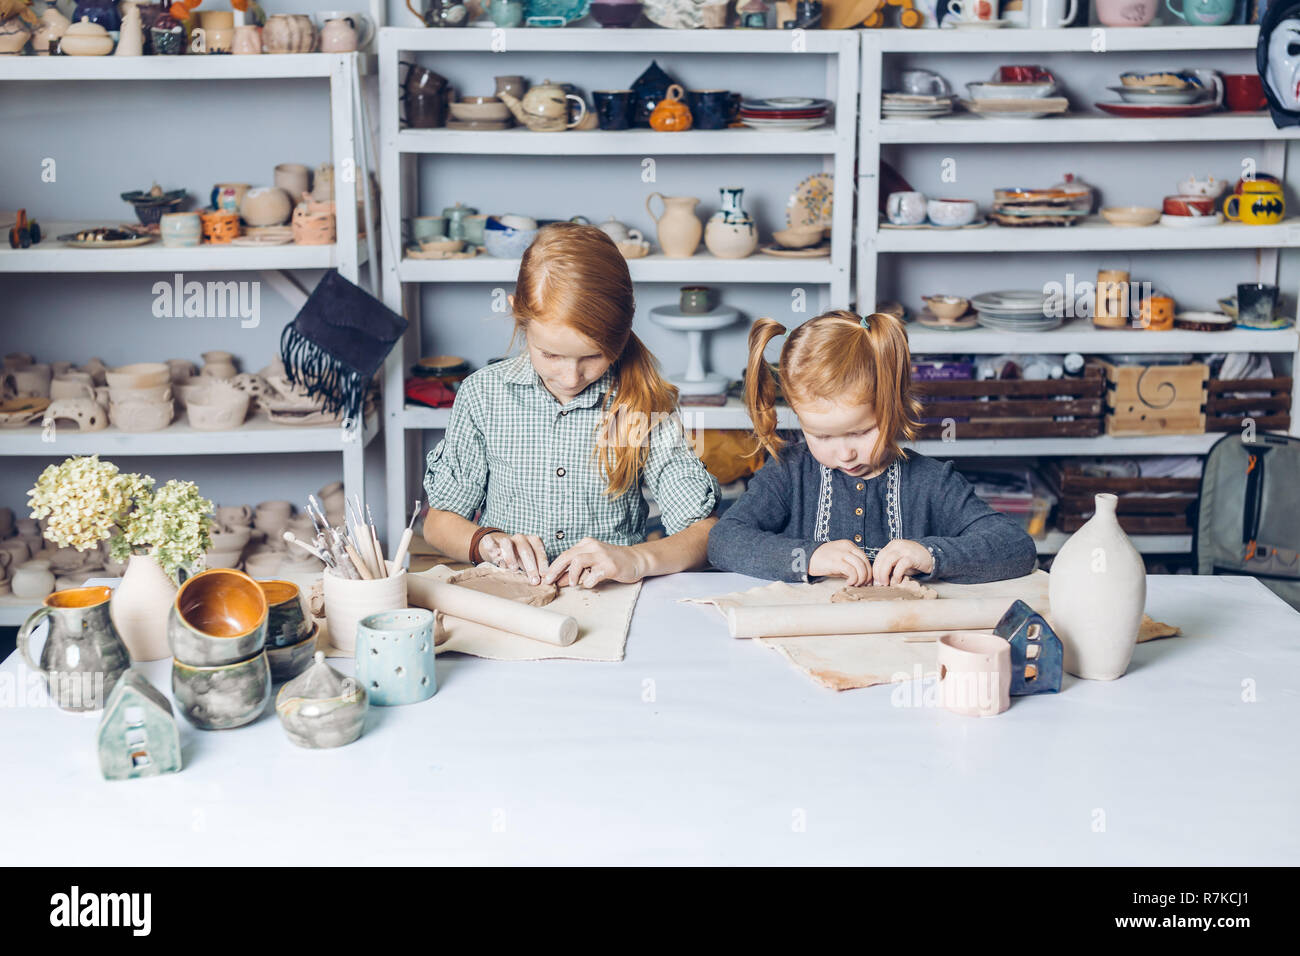 Deux clever kids dans l'argile de modélisation Banque D'Images